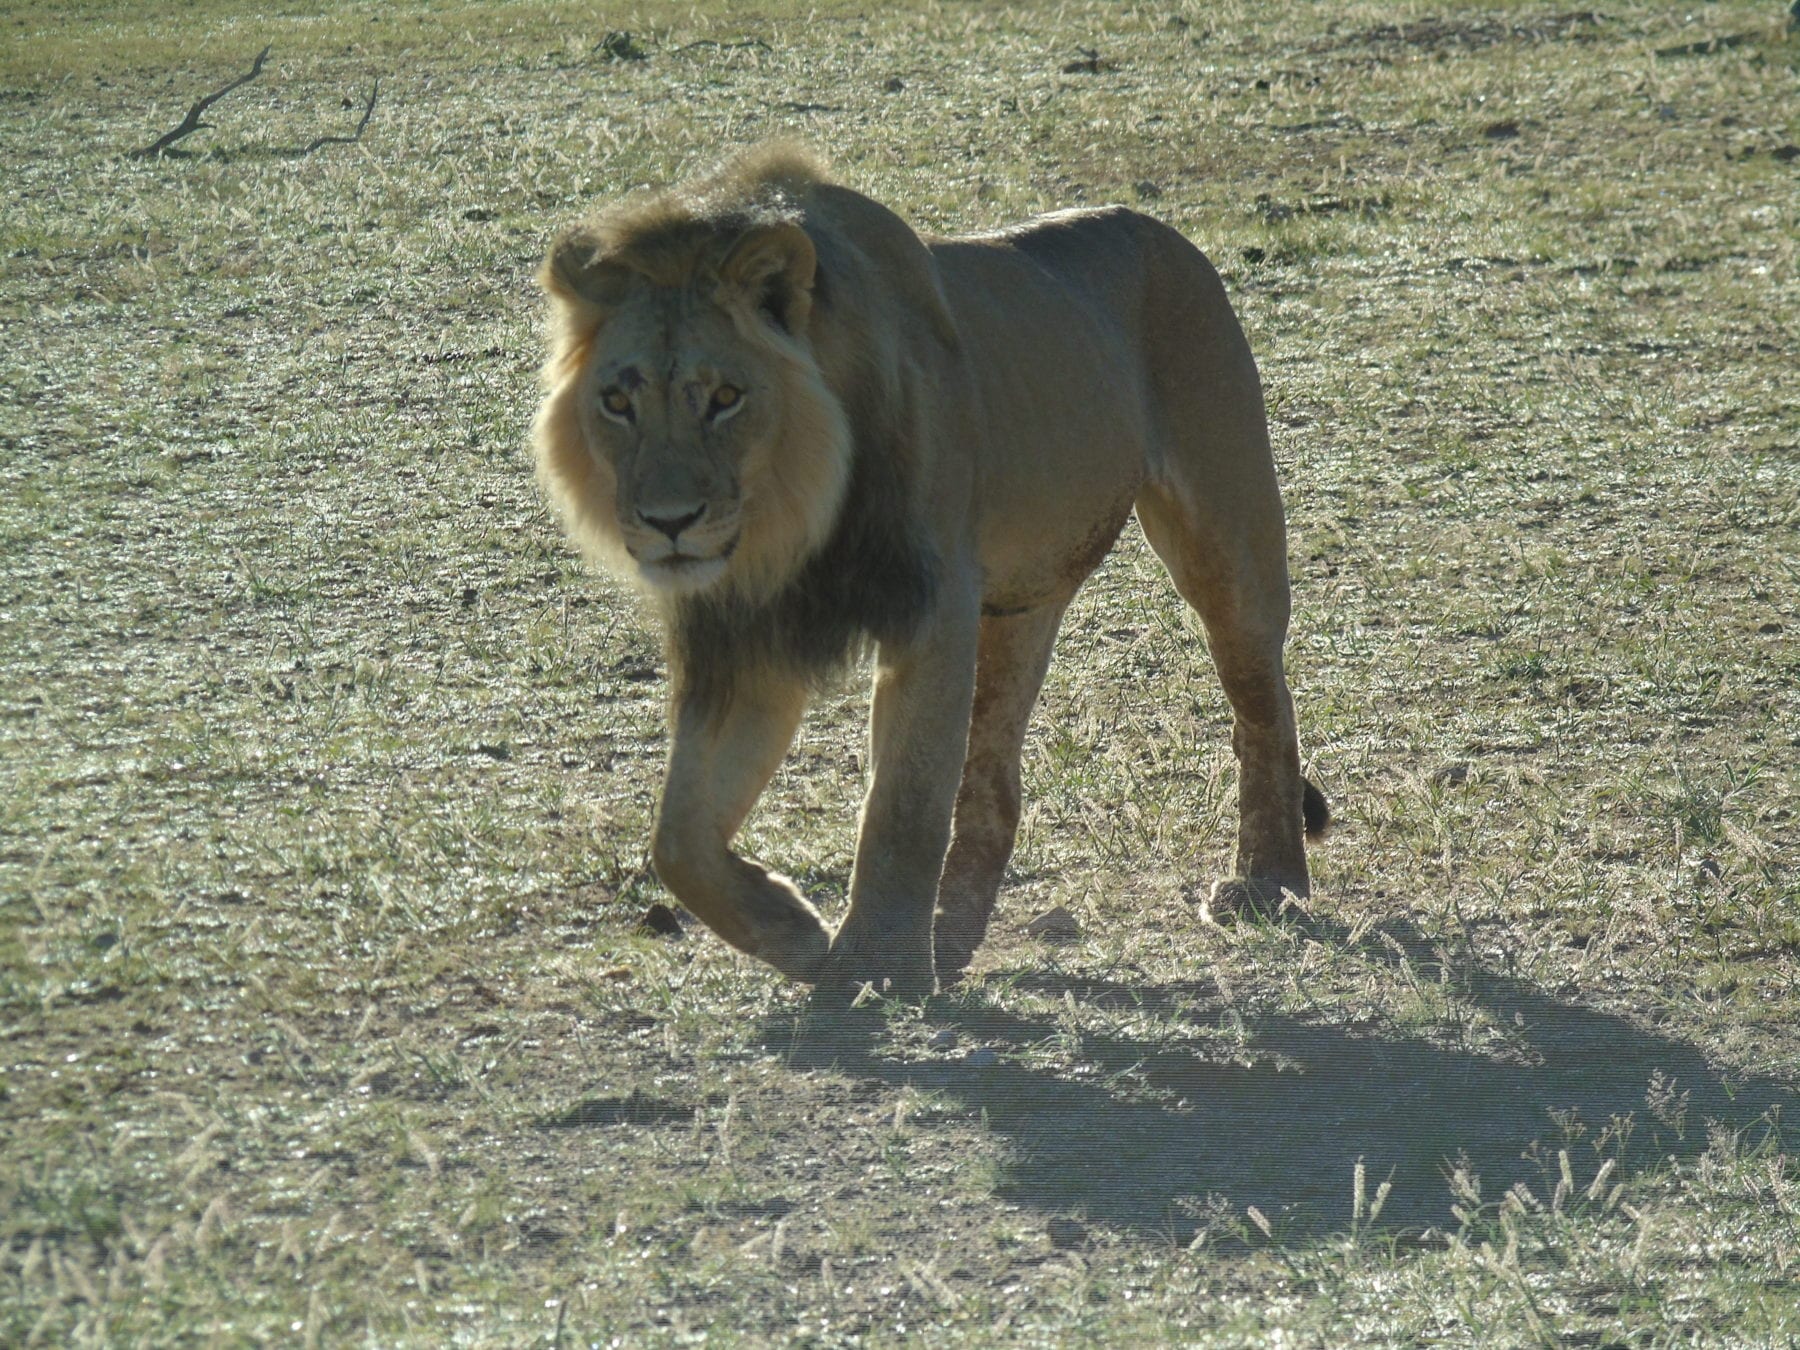 lion walking through South Africa’s Kalahari Desert